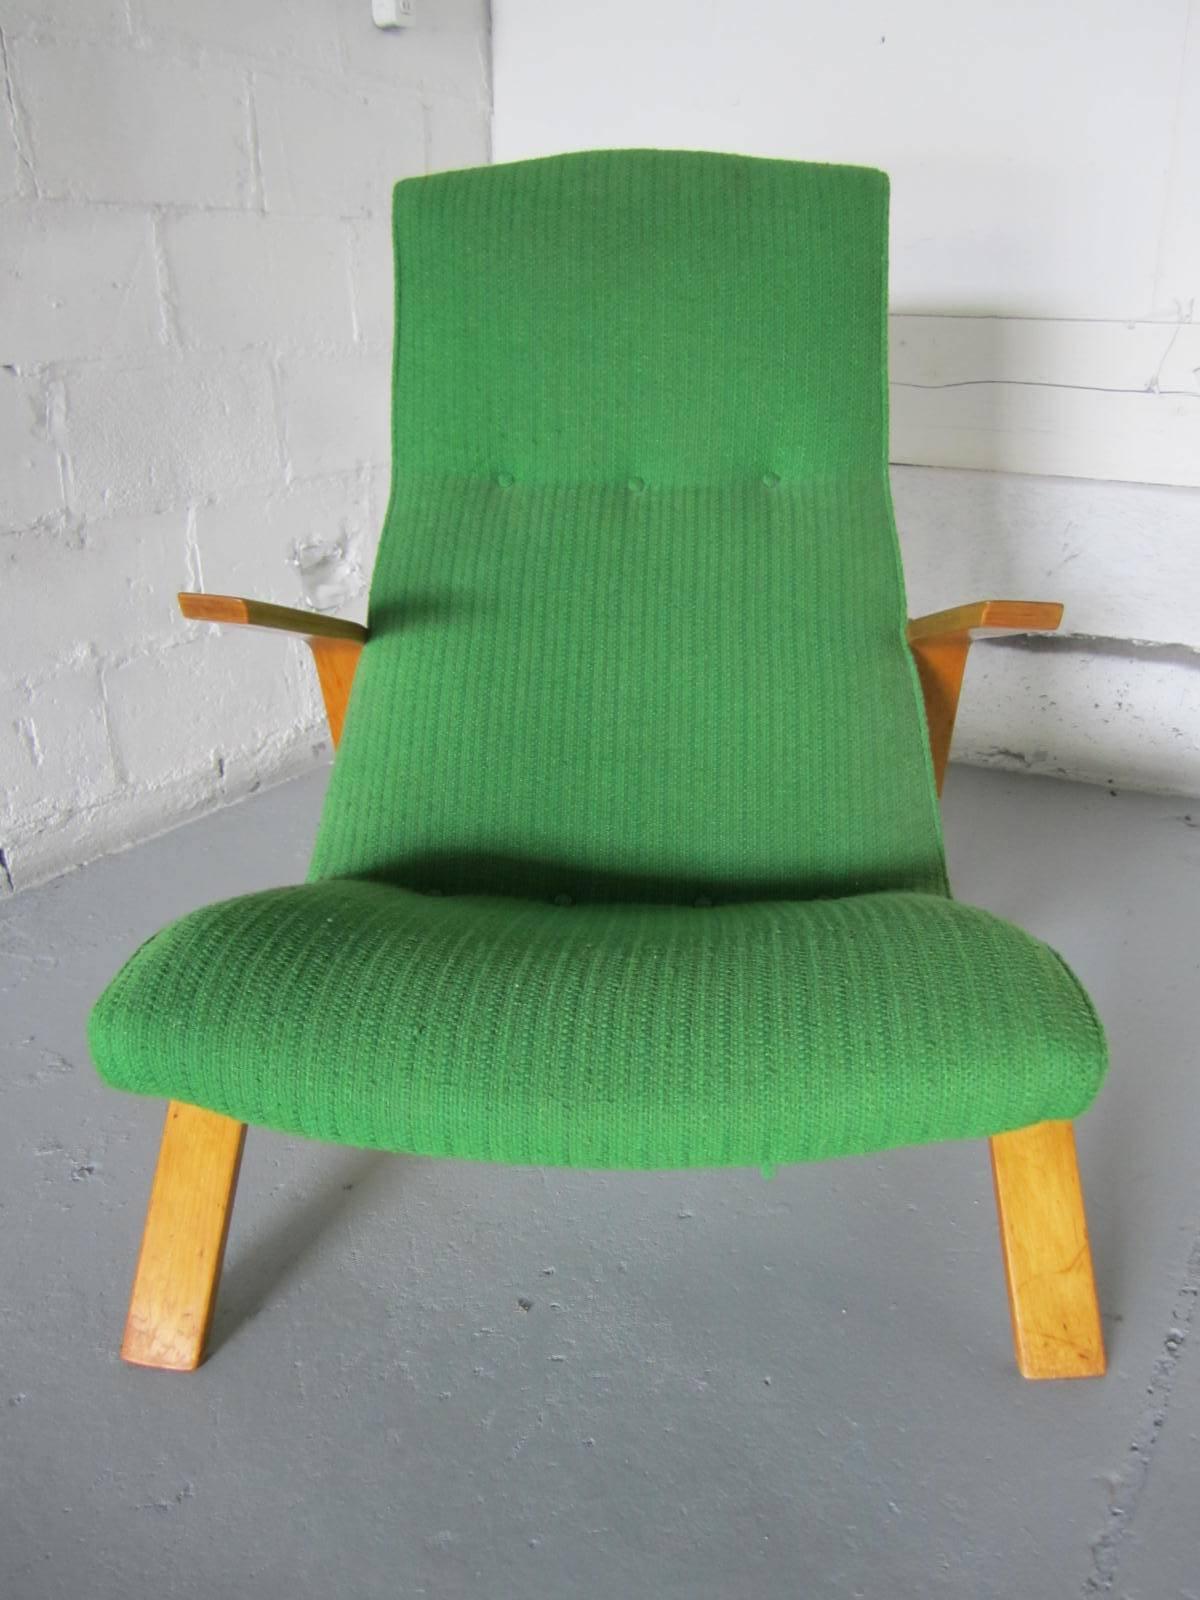 Die abgewinkelten Armlehnen des Grasshopper-Stuhls von Eero Saarinen bestehen aus tief gebogenen Kurven, die an die anmutigen Beine seines Namensvetters erinnern. Dieser Entwurf von 1949 wurde ursprünglich von Knoll hergestellt. Bei diesem Stuhl